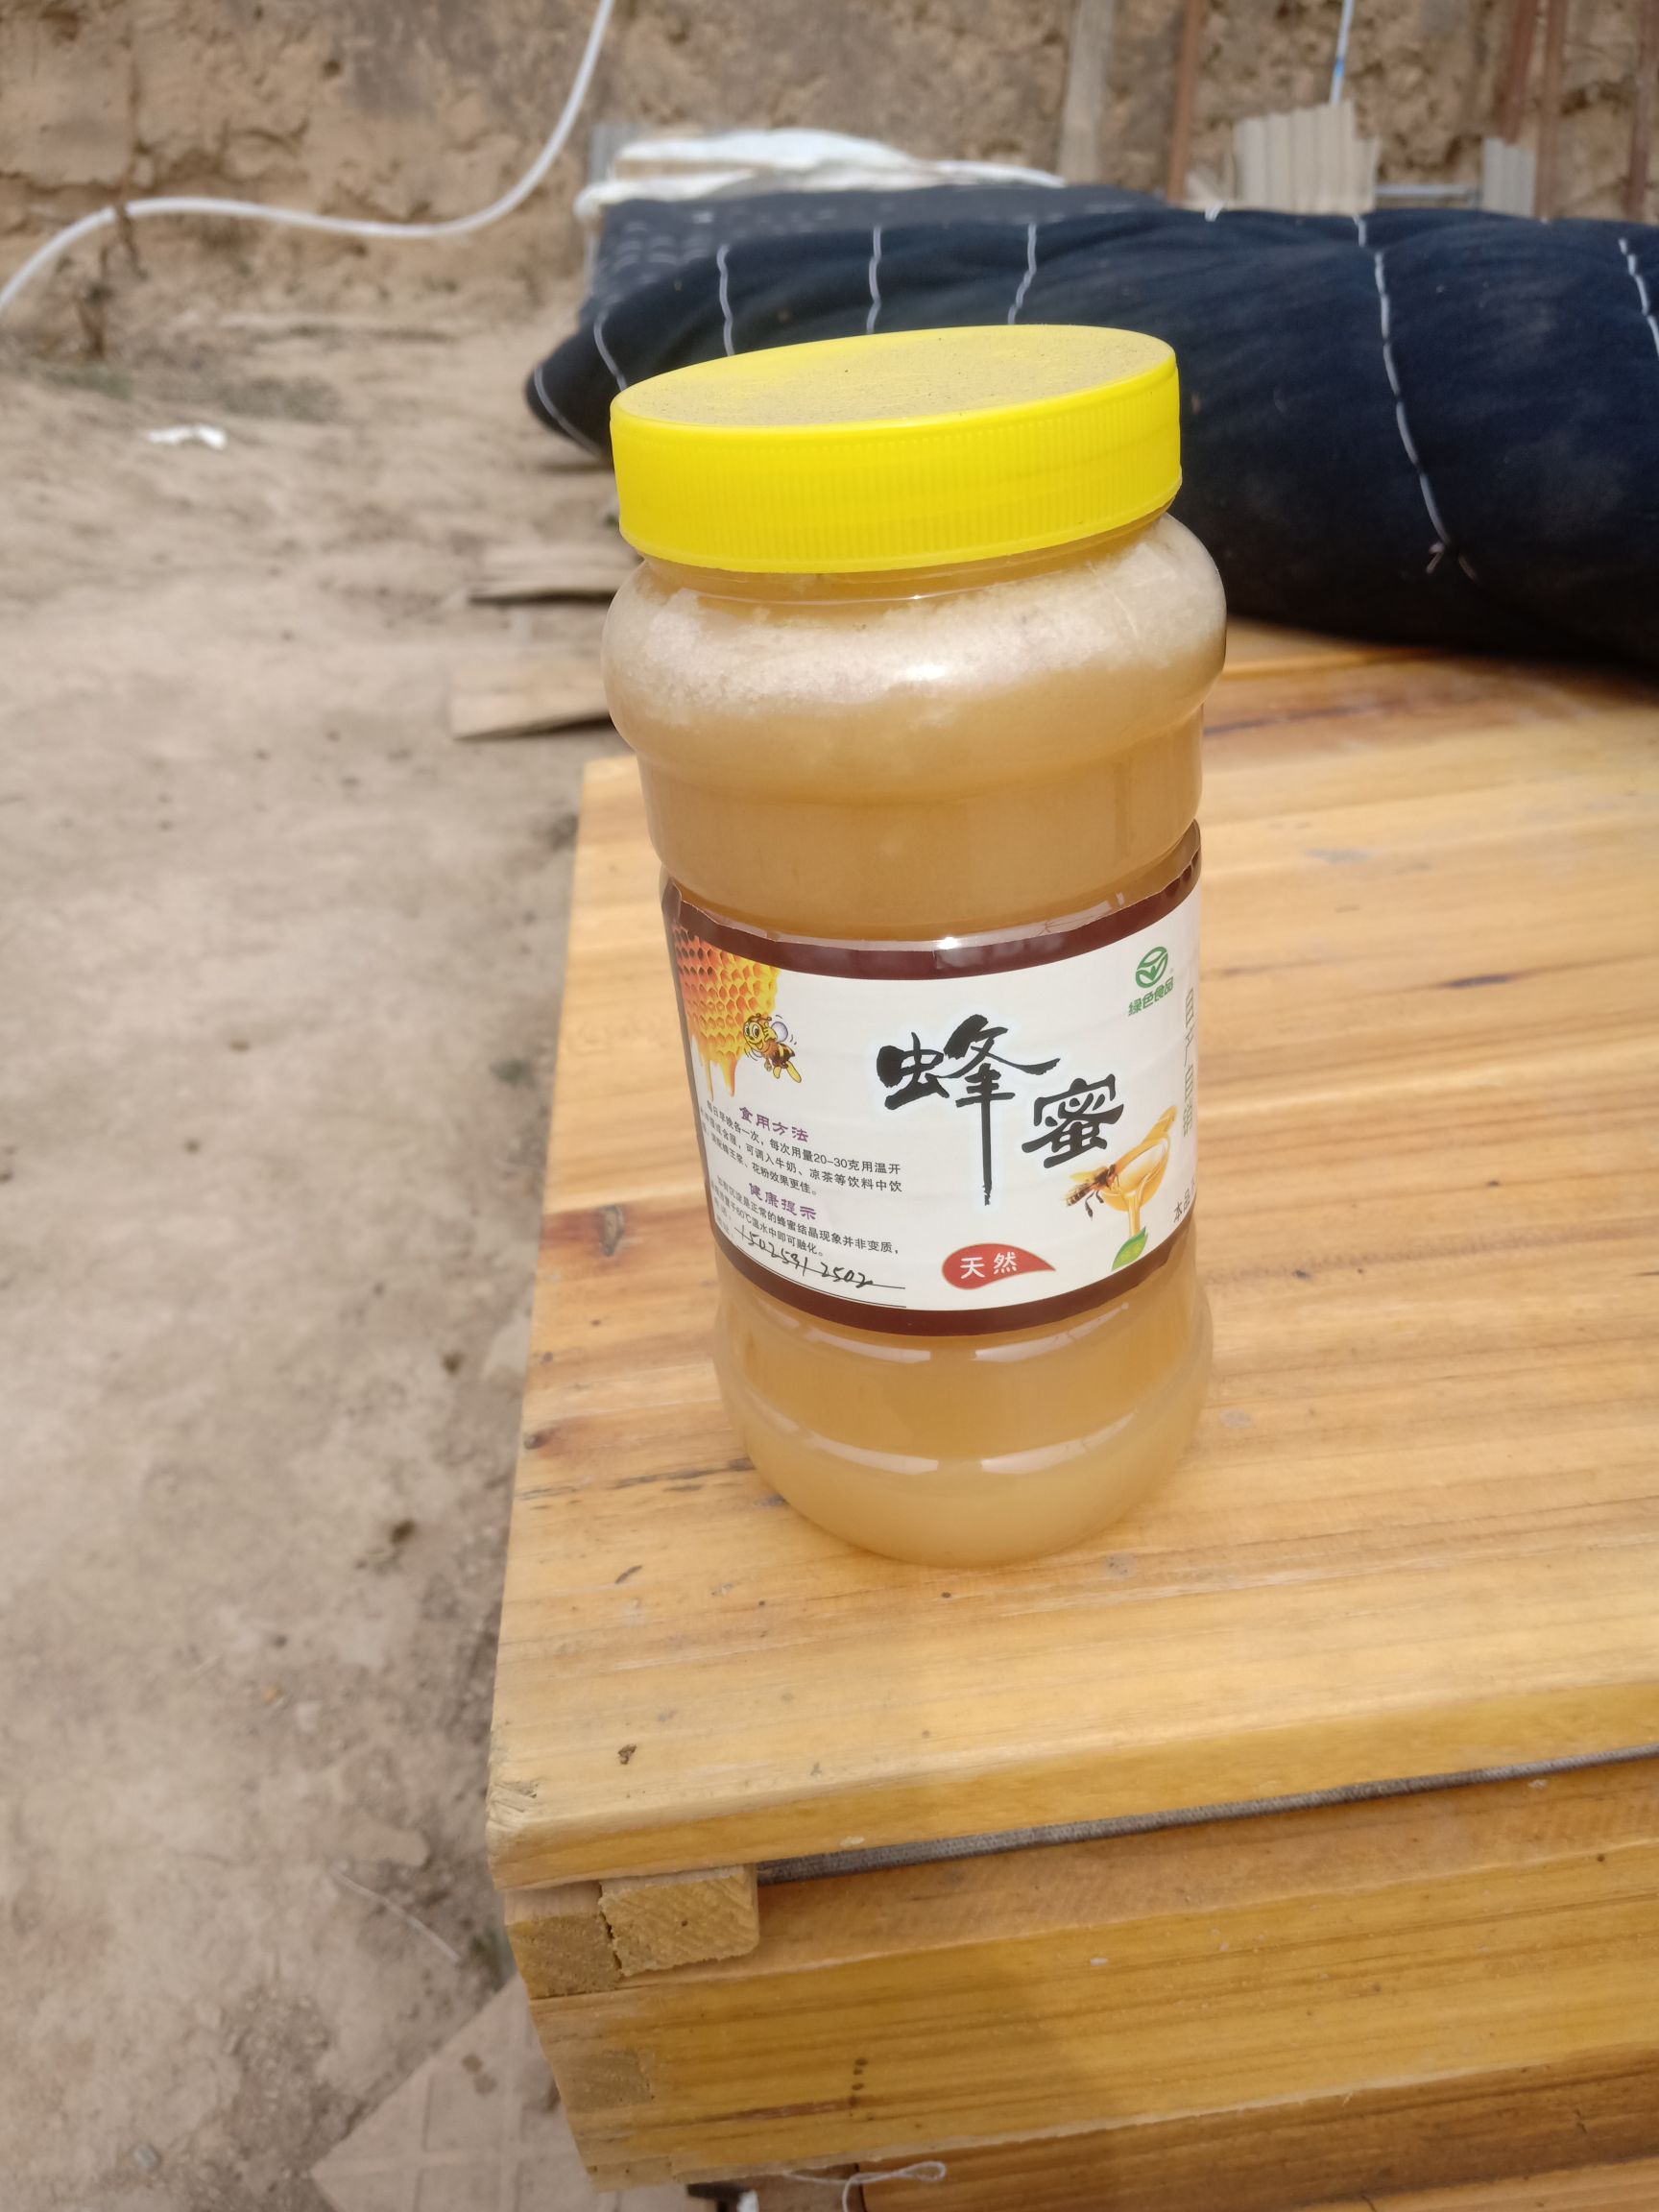 临洮县黄芪蜂蜜 塑料瓶装 2年以上 